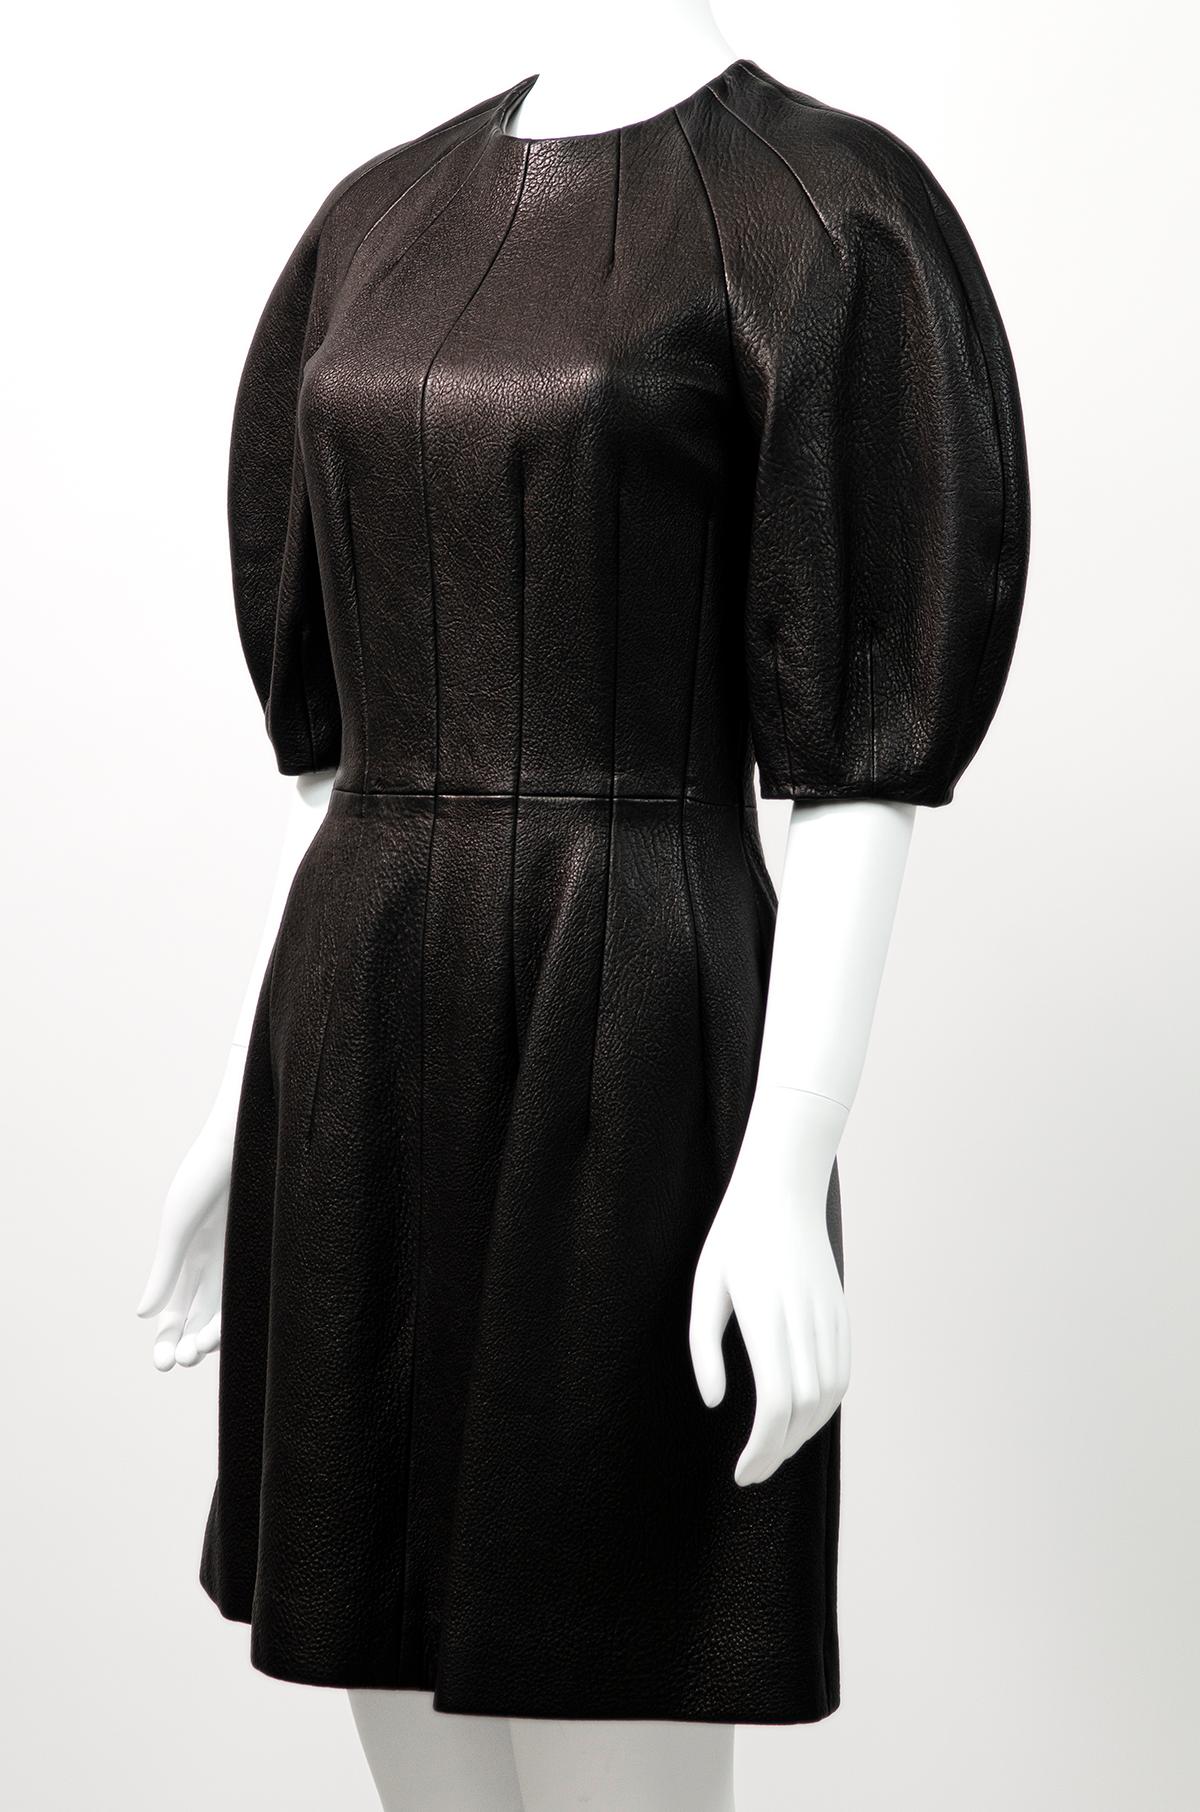 Incroyable robe en cuir texturé Alexander McQueen avec la plus incroyable des silhouettes dramatiques.

Cette robe de haute qualité présente la plus incroyable des silhouettes rondes - Elle est fabriquée en cuir texturé et présente une encolure